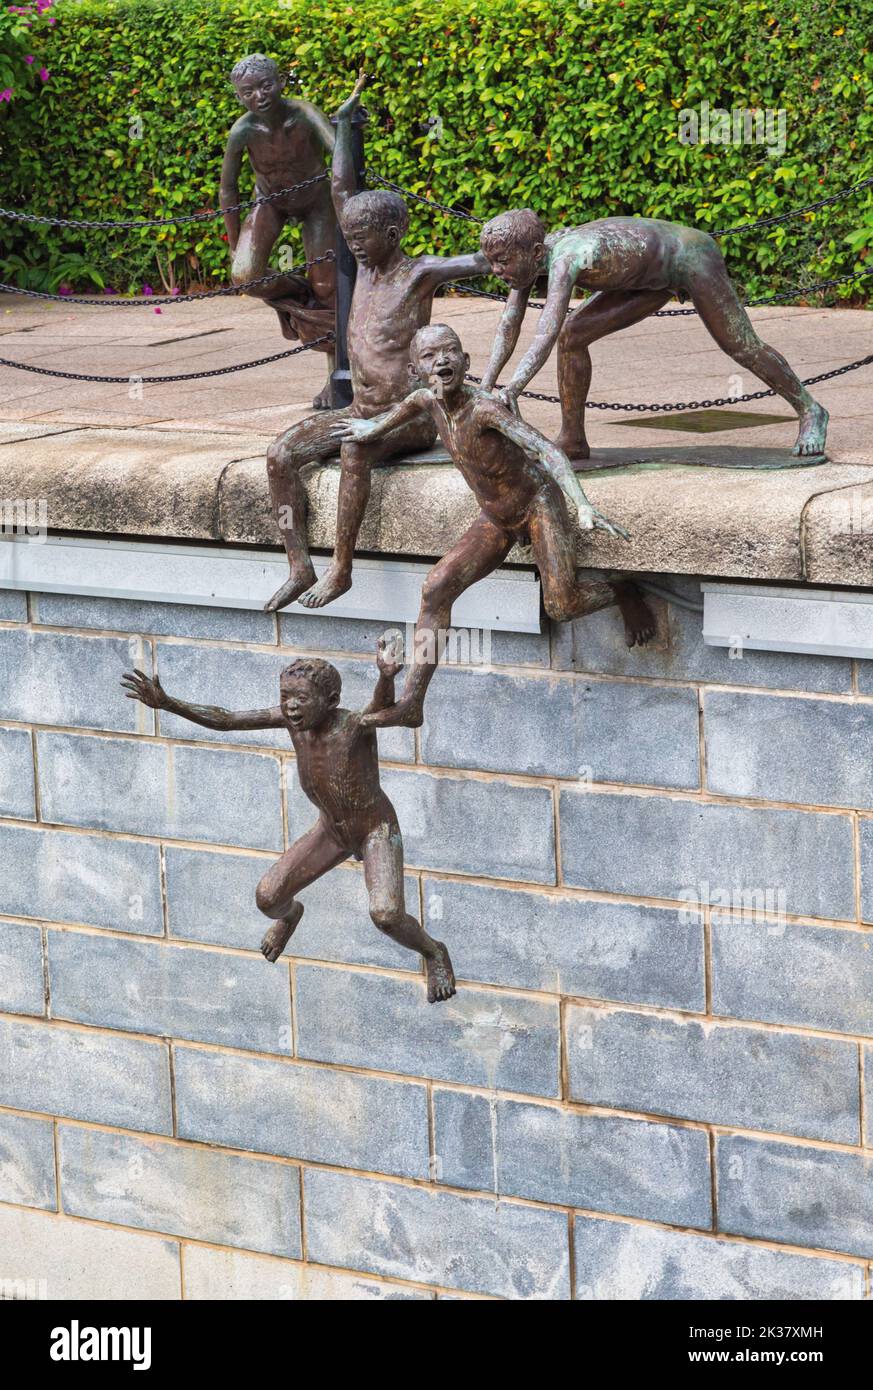 La Primera Generación, una escultura de bronce del artista singapurense Chong Fah Cheong, nacido en 1946. República de Singapur. Él ha creado varios figurativos Foto de stock